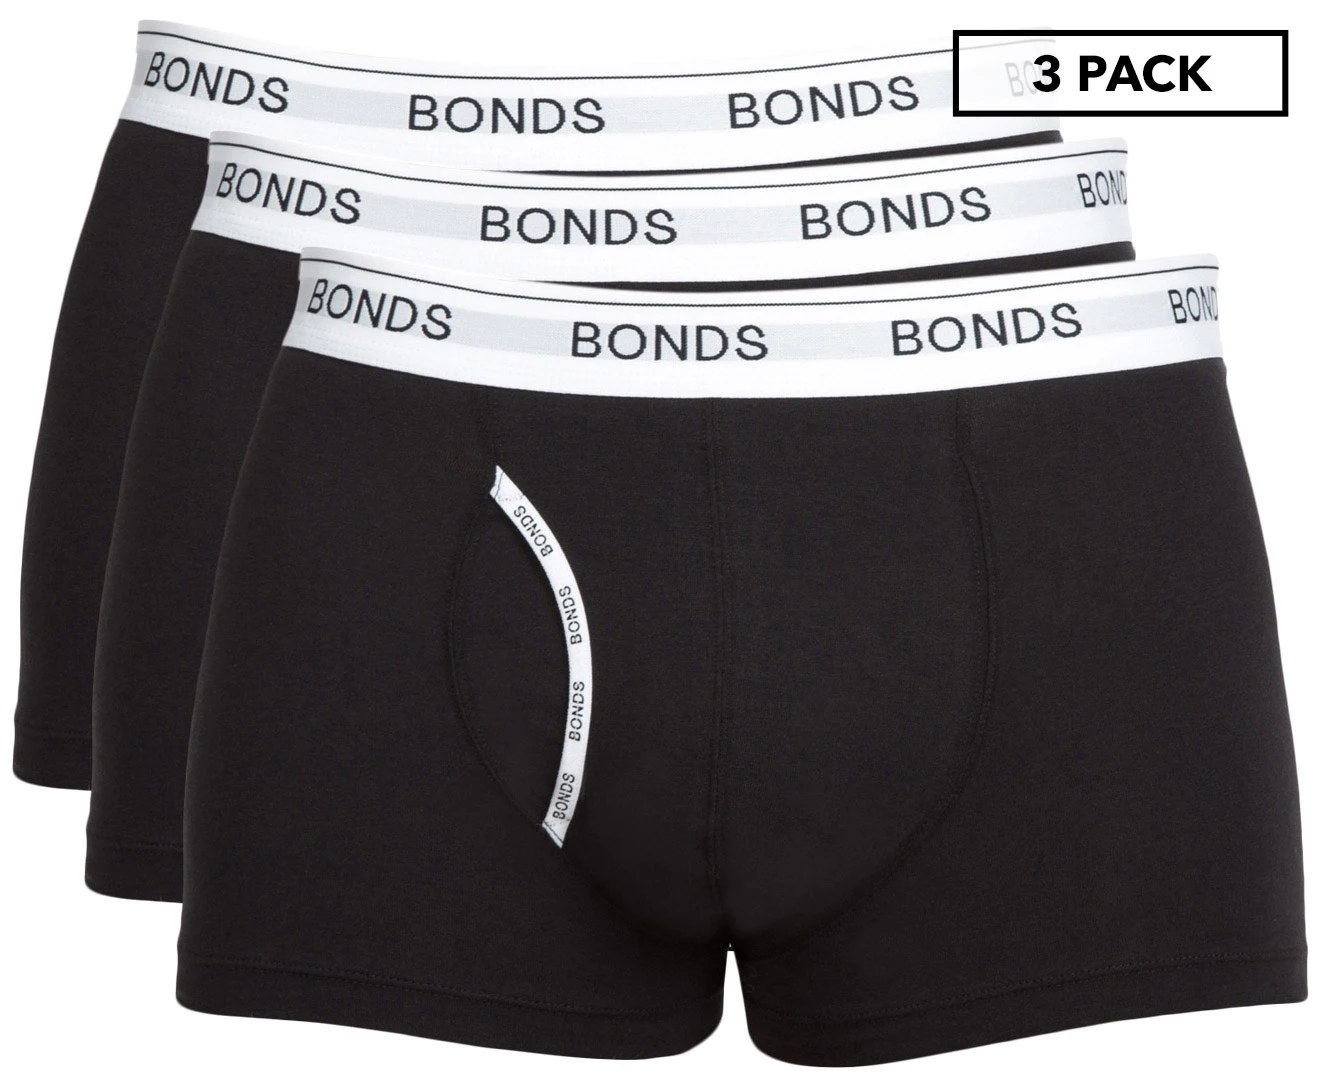 Shop Men's Underwear Online